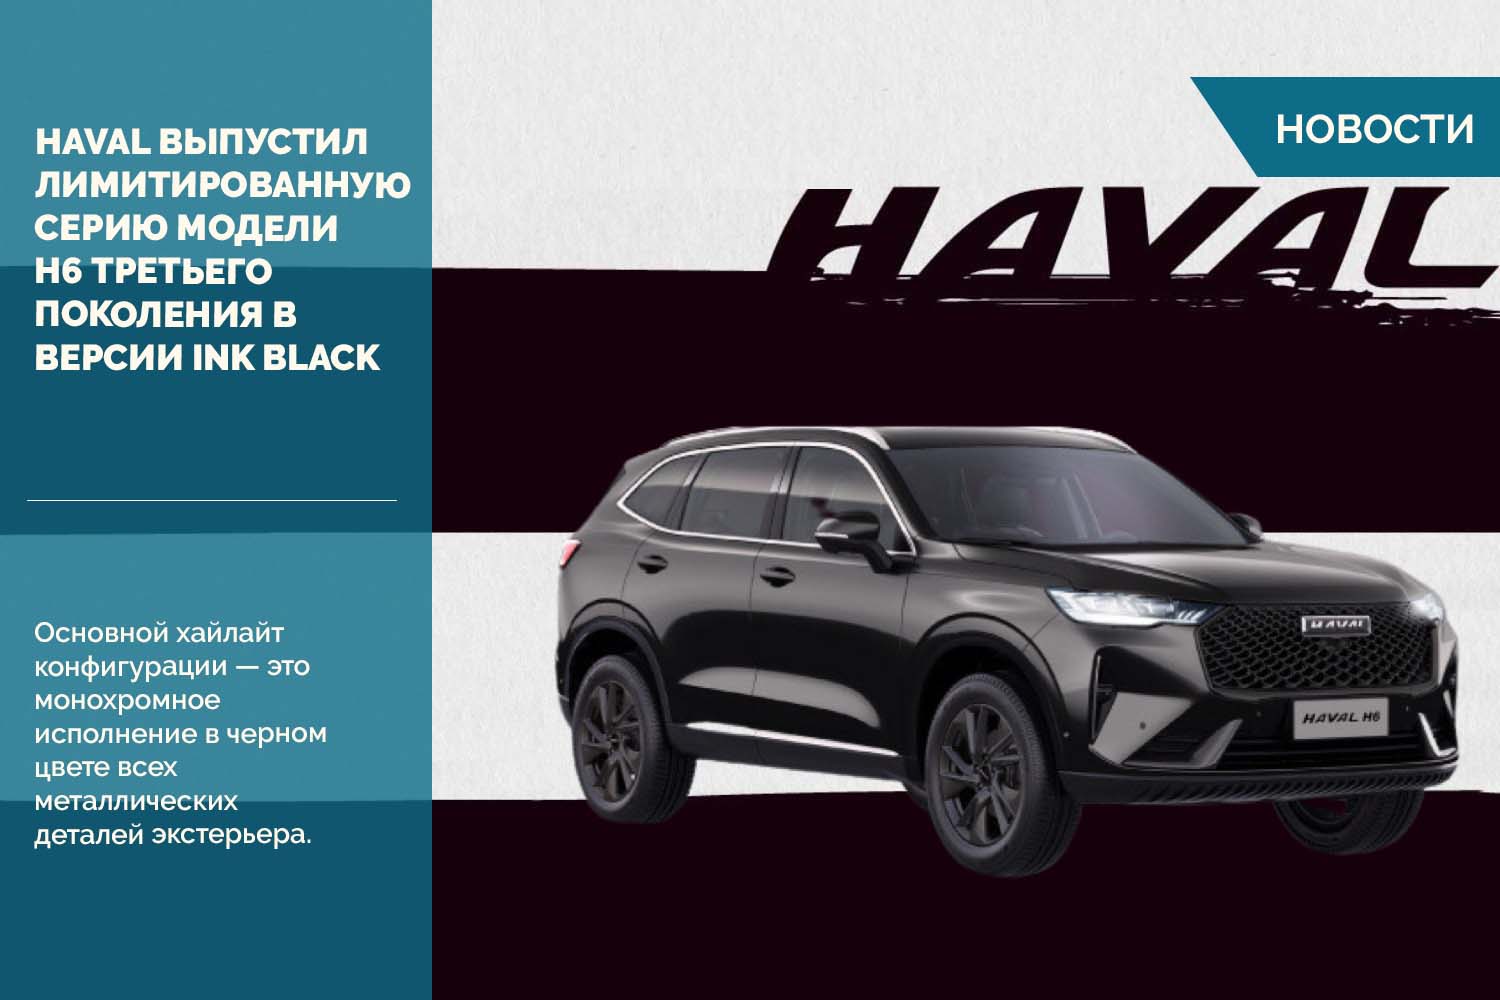 HAVAL выпустил лимитированную серию модели H6 третьего поколения в цветовой версии Ink Black